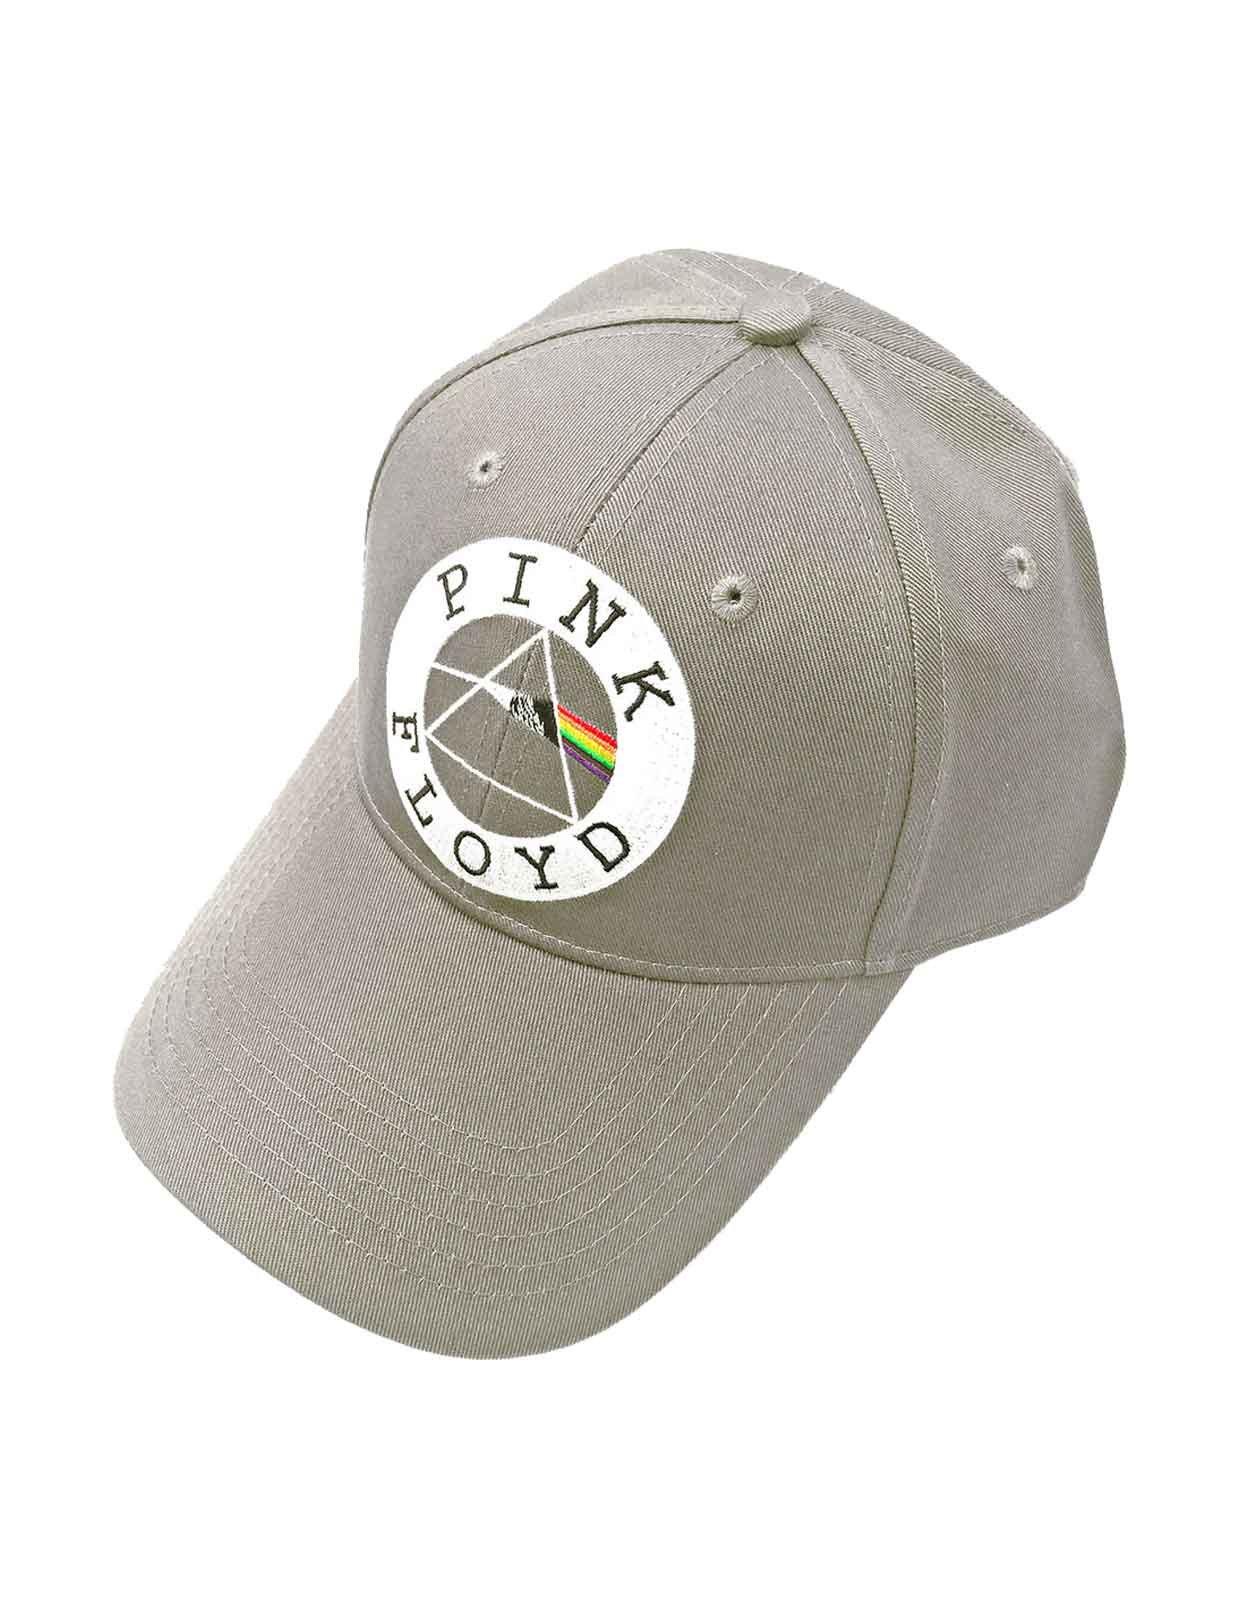 Бейсбольная кепка с круглым логотипом и ремешком на спине Pink Floyd, коричневый фото